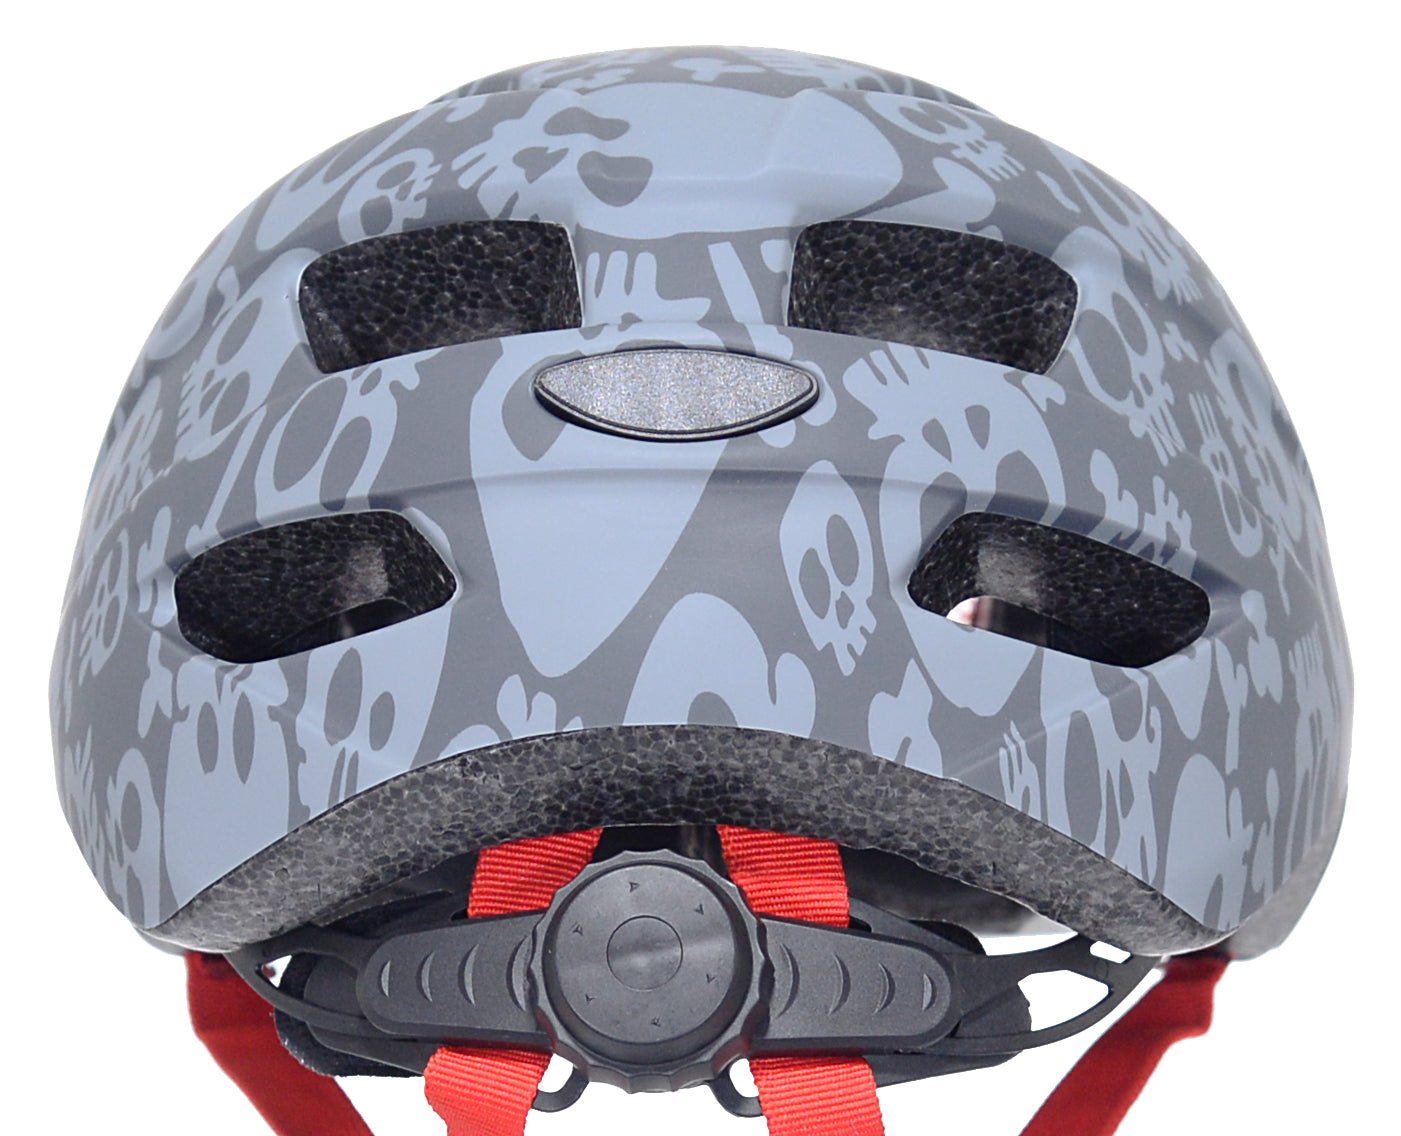 Kent Toddler Multi-Sport Helmet | For Ages 1 - 3